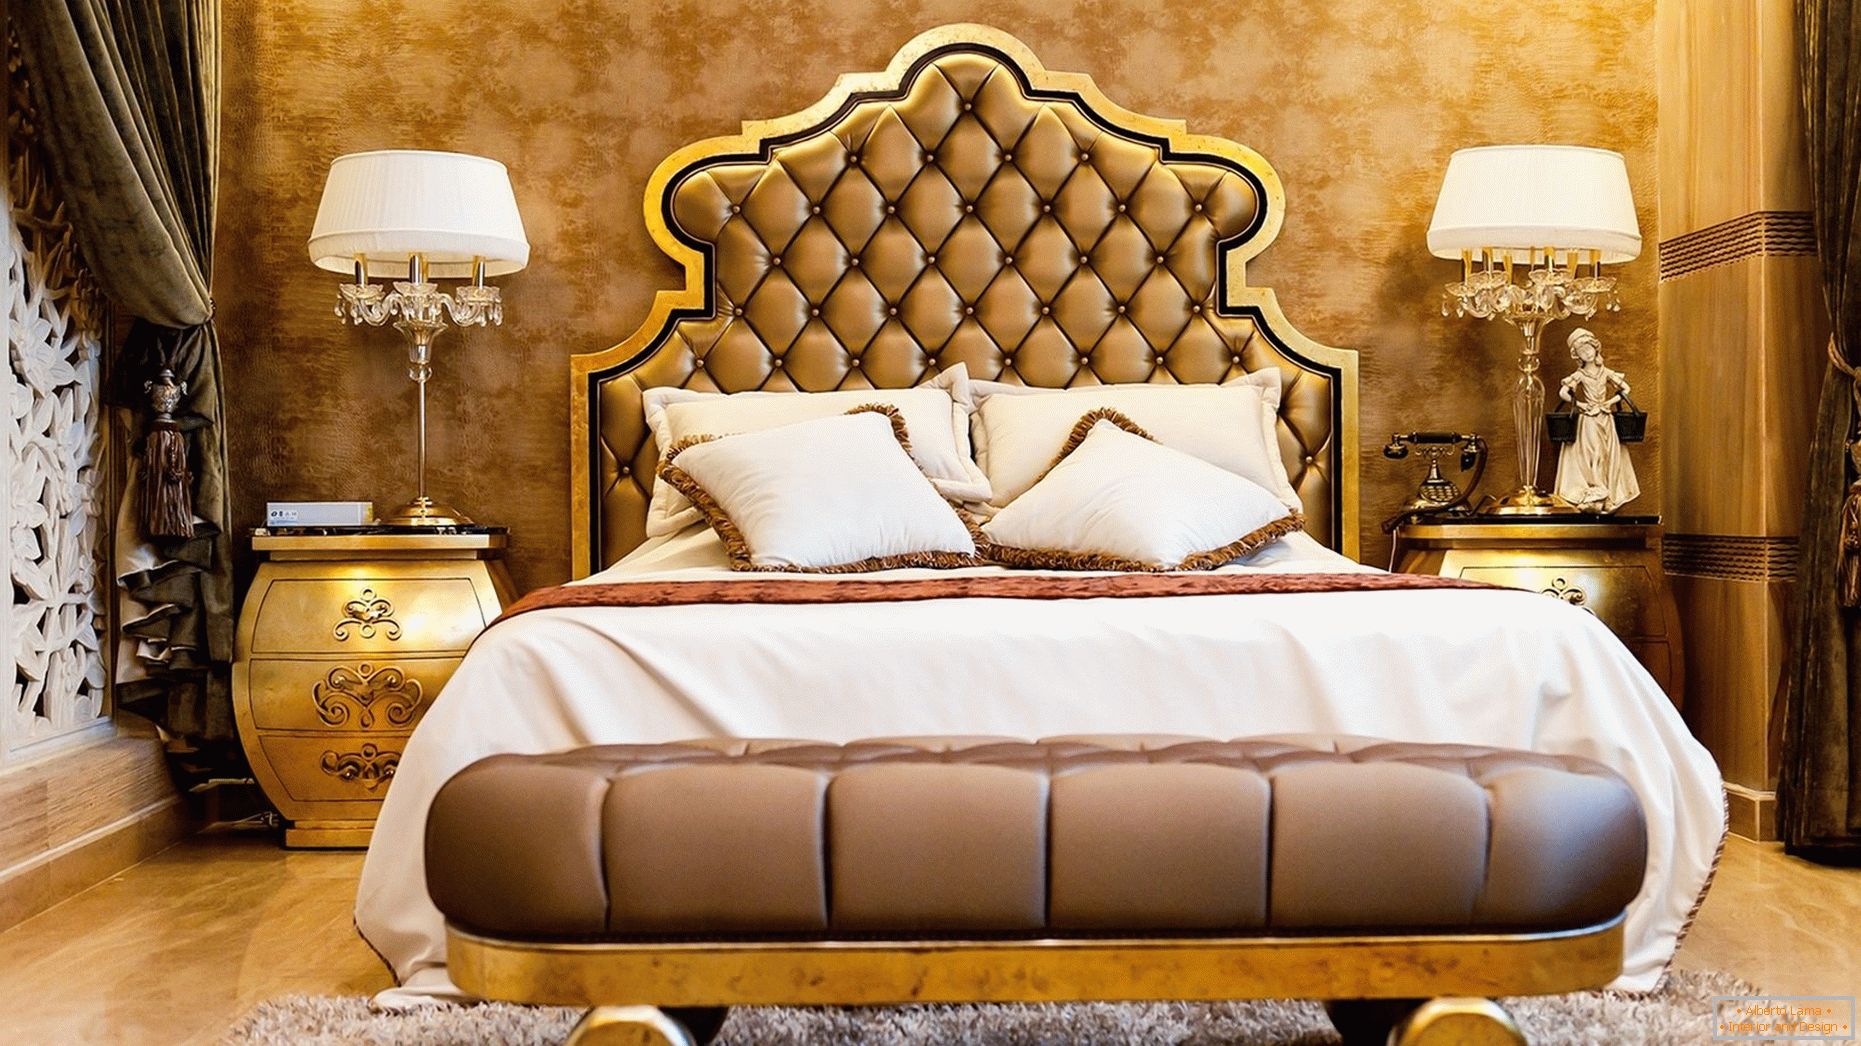 Papel de parede dourado no design dos quartos